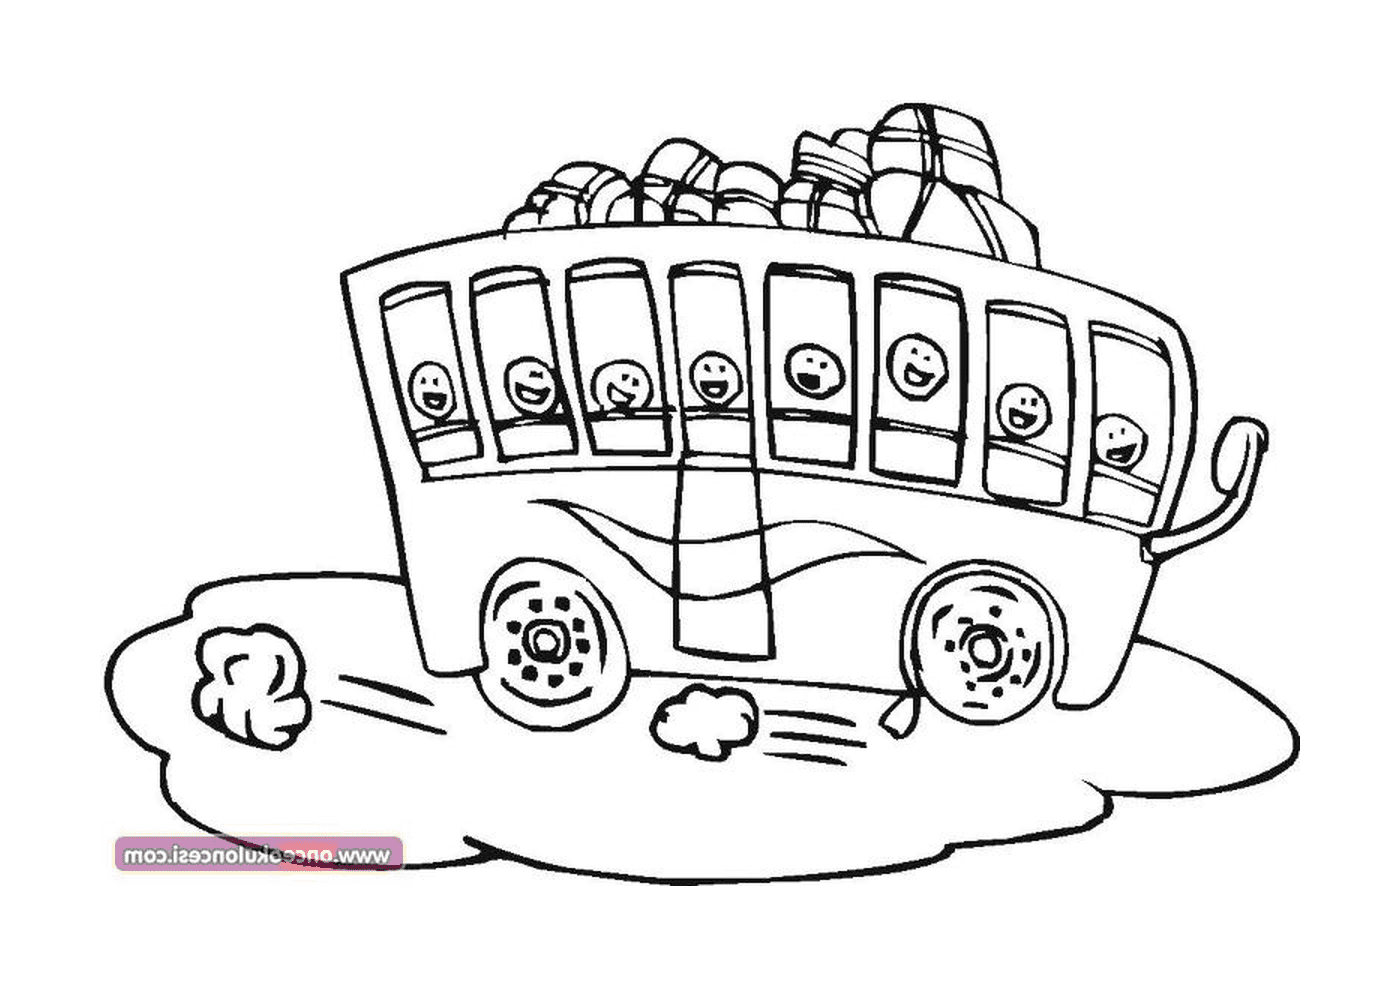  Un autobus con molte facce disegnate su di esso 